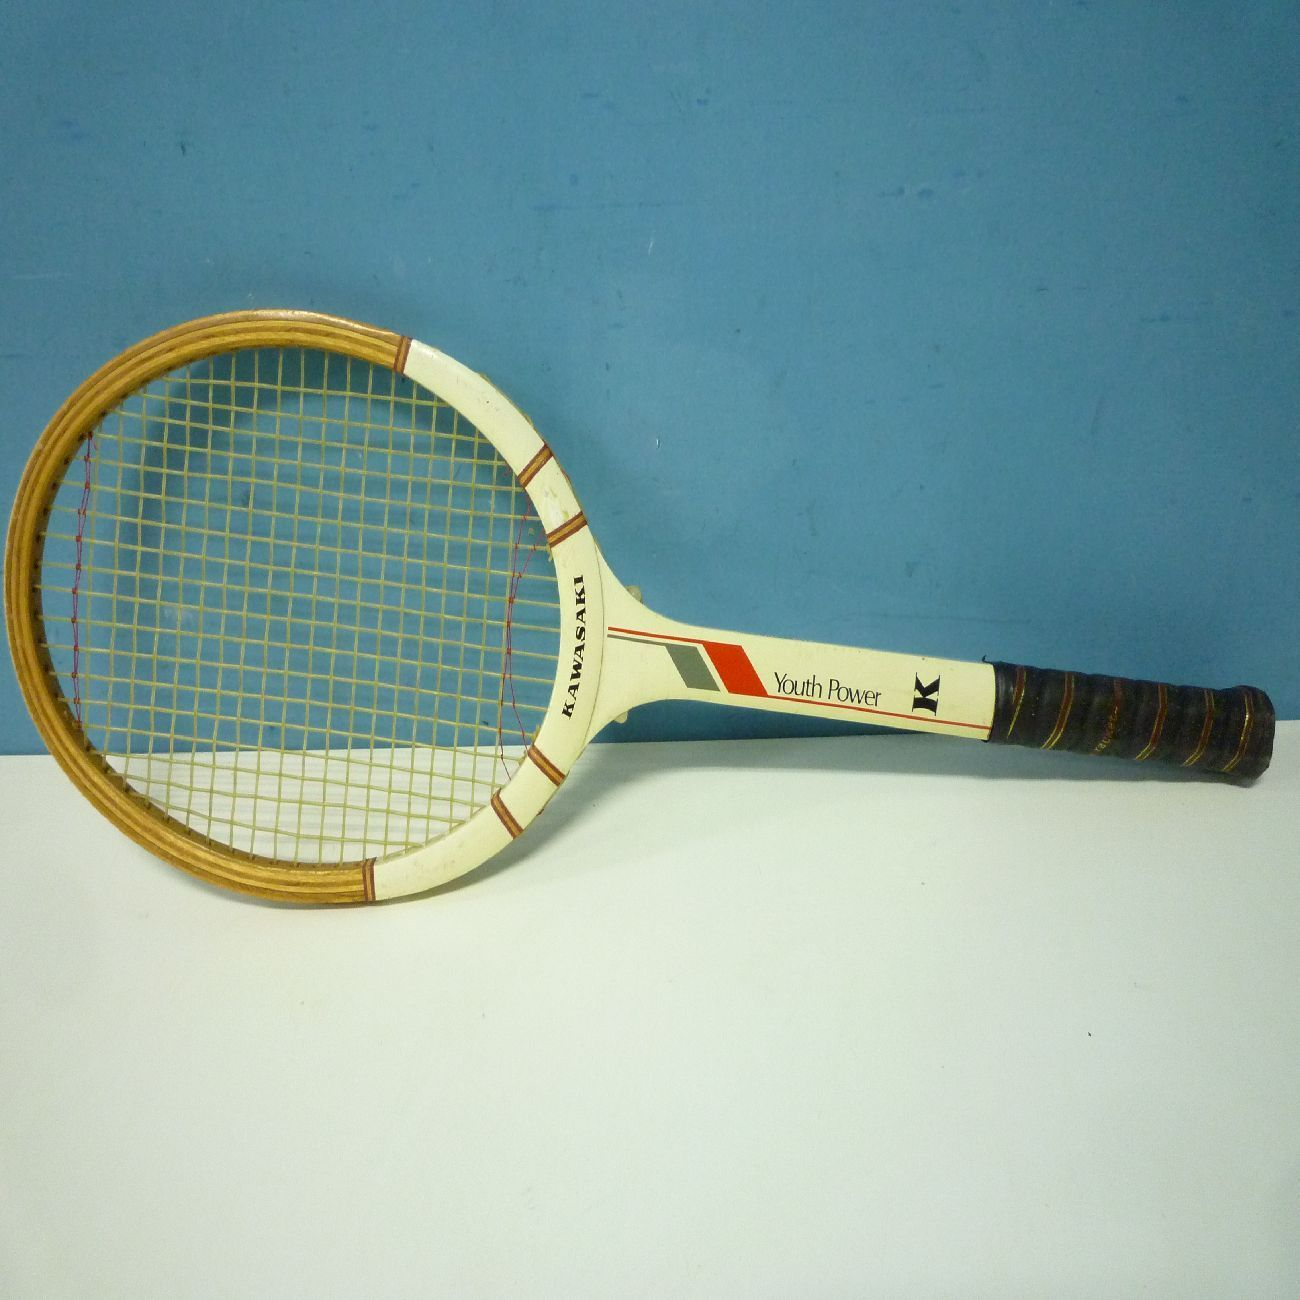 KAWASAKI 硬式テニス ラケット 木製 Youth Power ビンテージ No162 